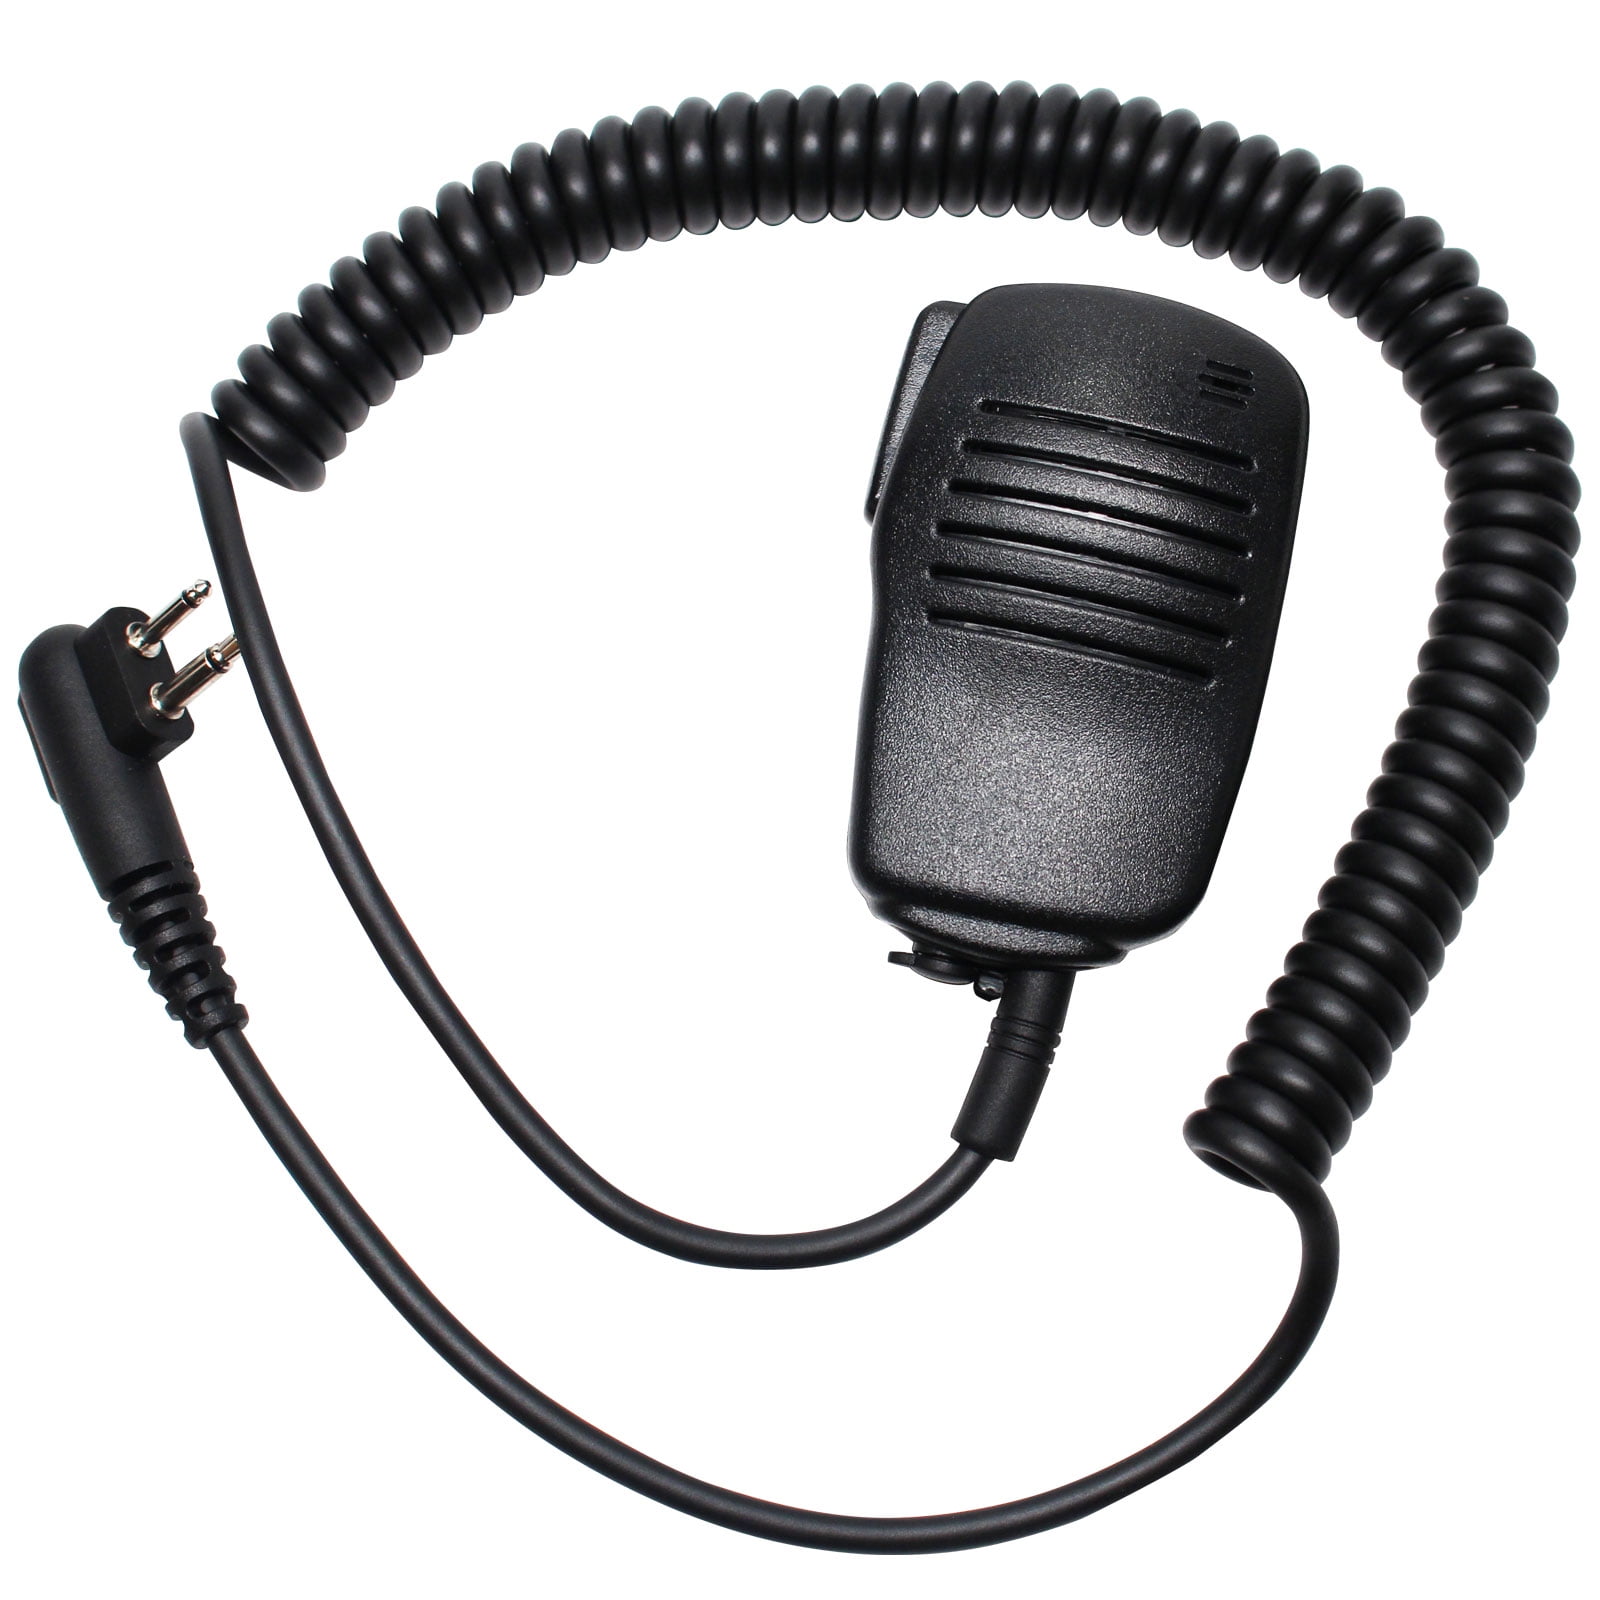 For Motorola Radio  Heavy Duty Hand/Shoulder Mic Speaker DTR550 DTR610 DTR650 